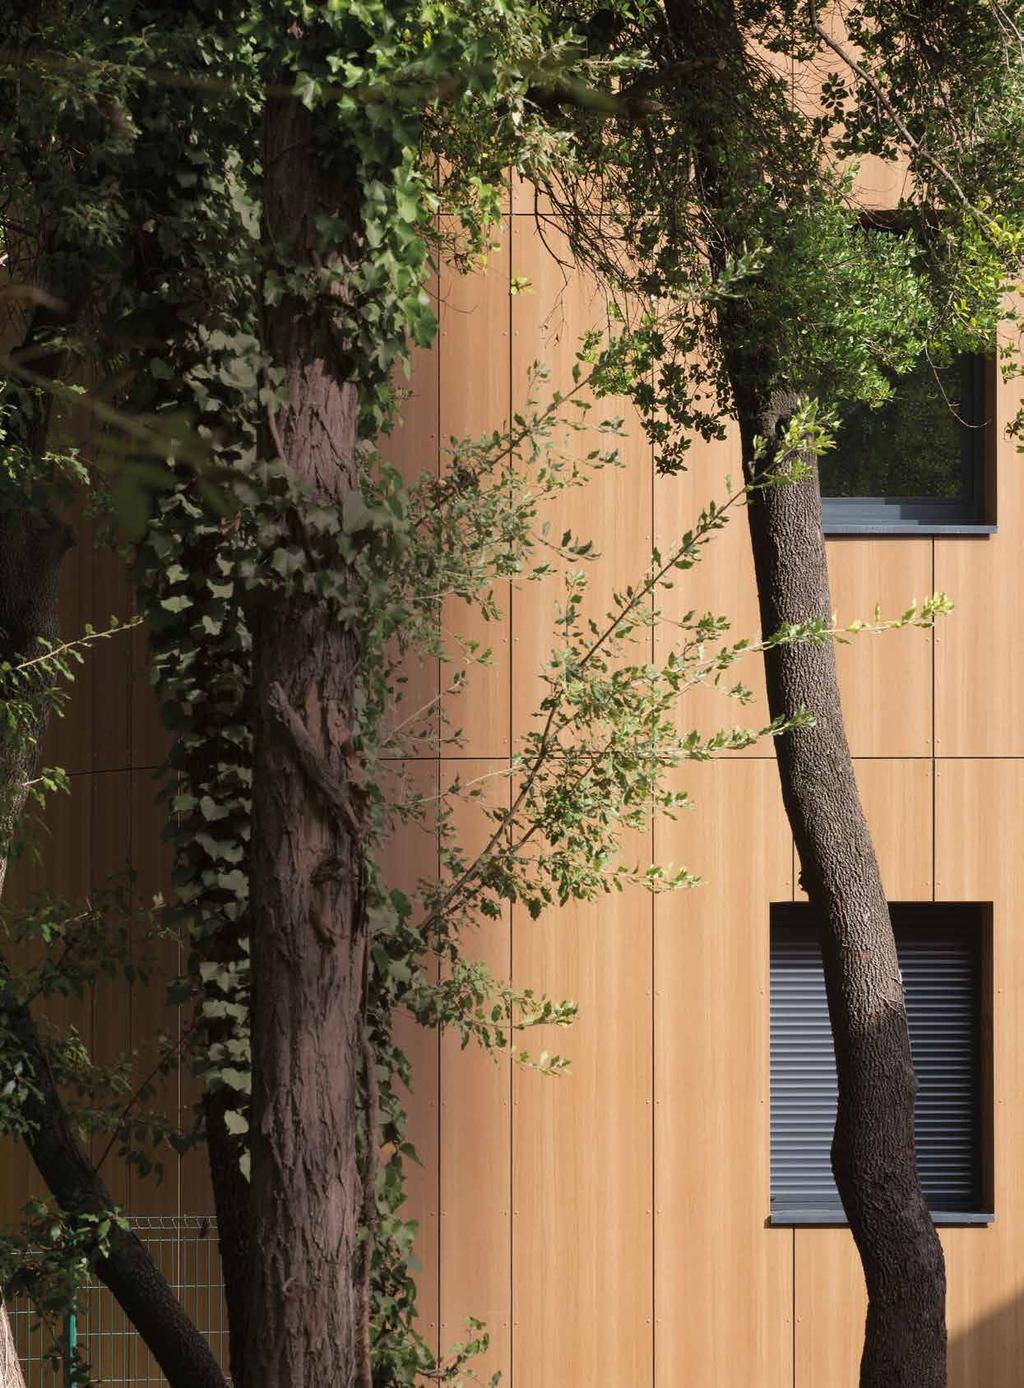 VON HOLZ INSPIRIERT Edle Hölzer aus aller Welt 34 Holz ist in der zeitgenössischen Architektur allgegenwärtig.